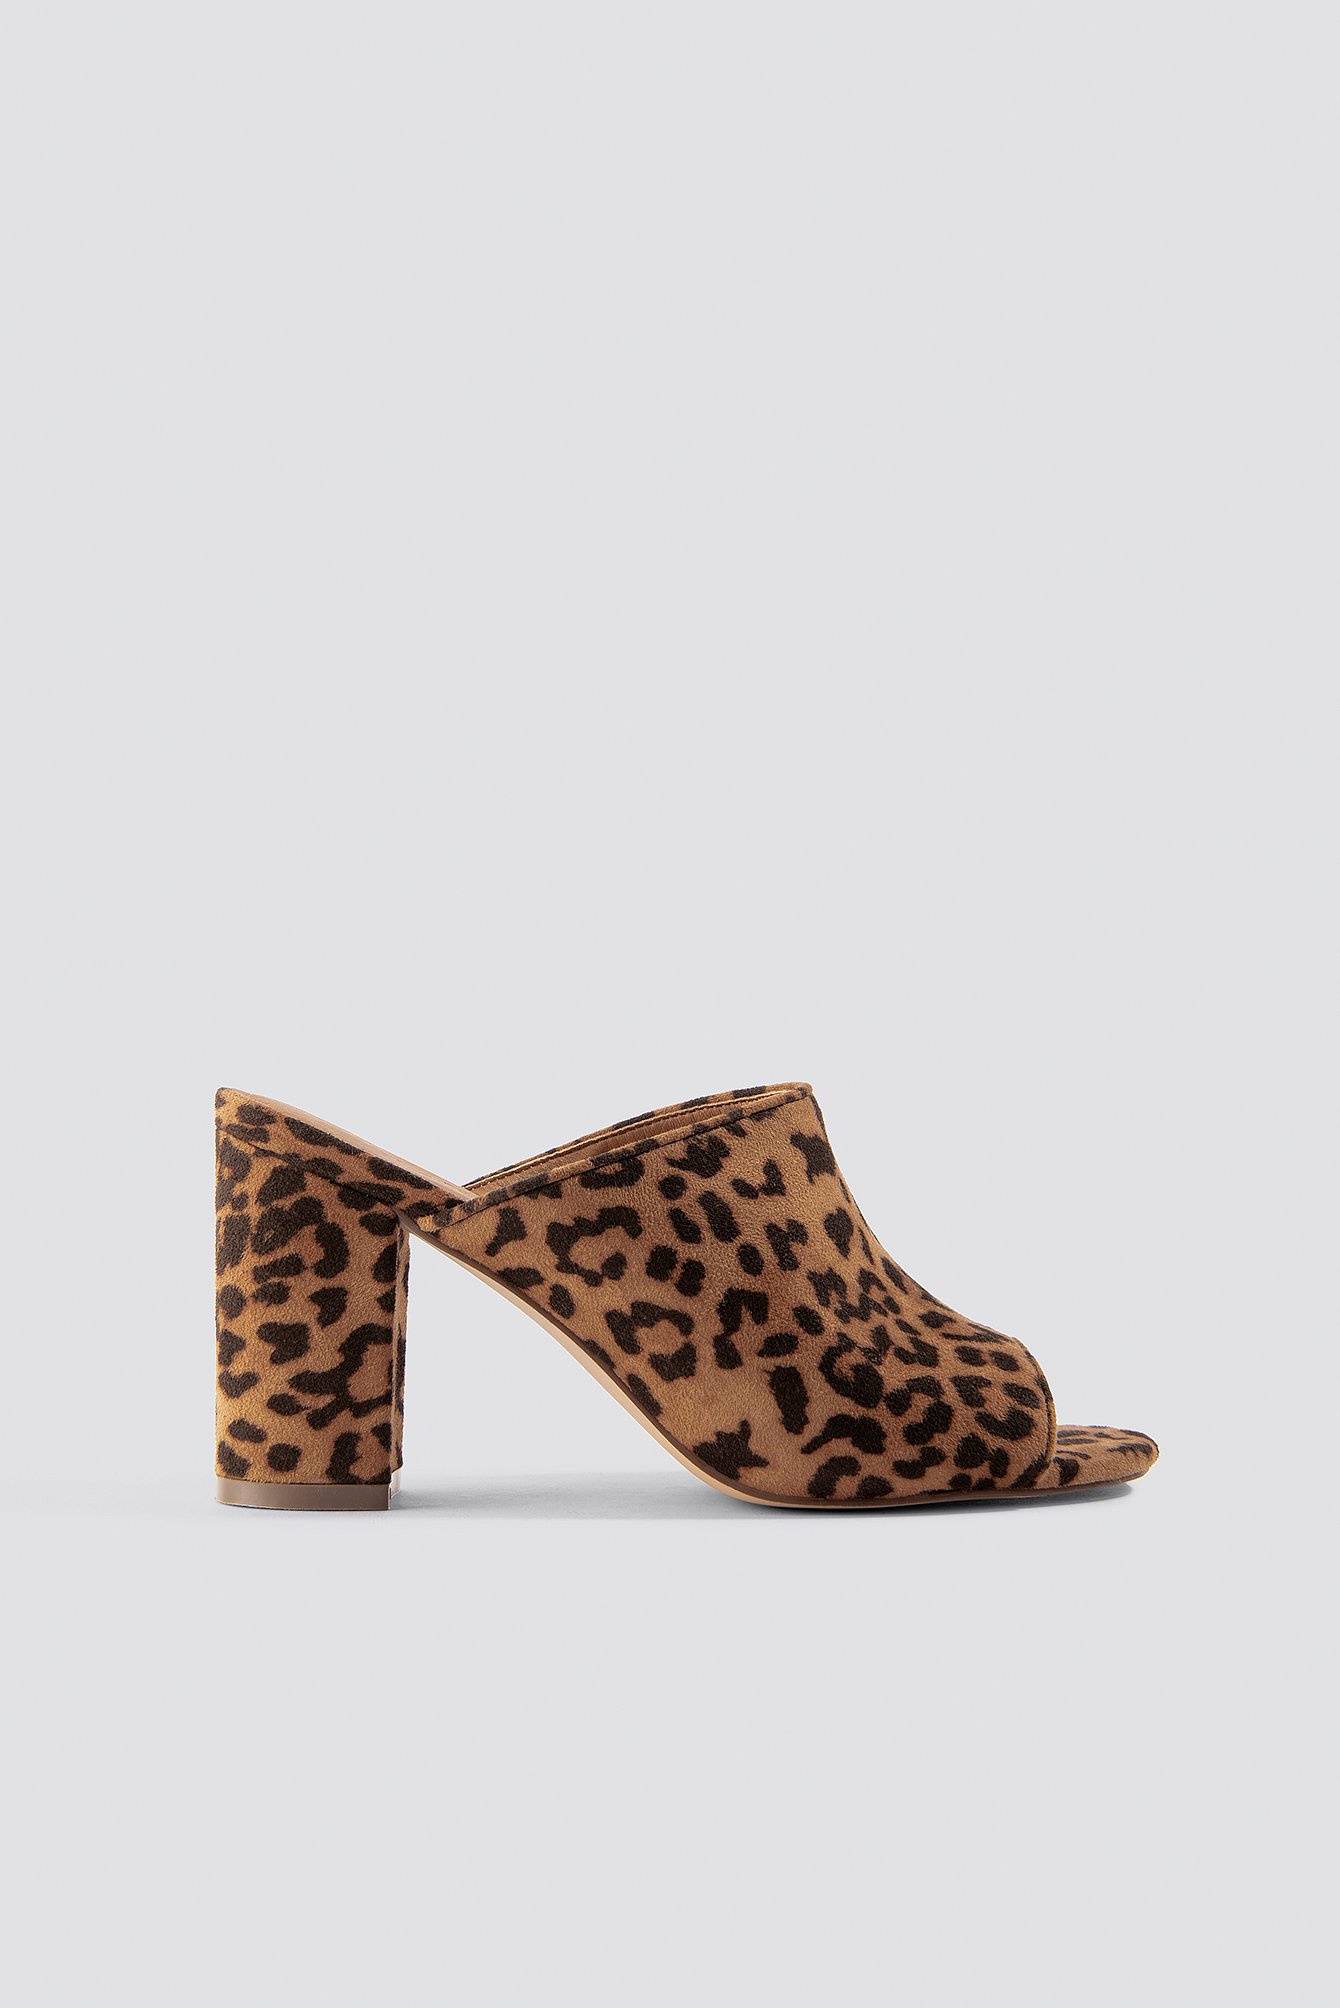 leopard mules shoes